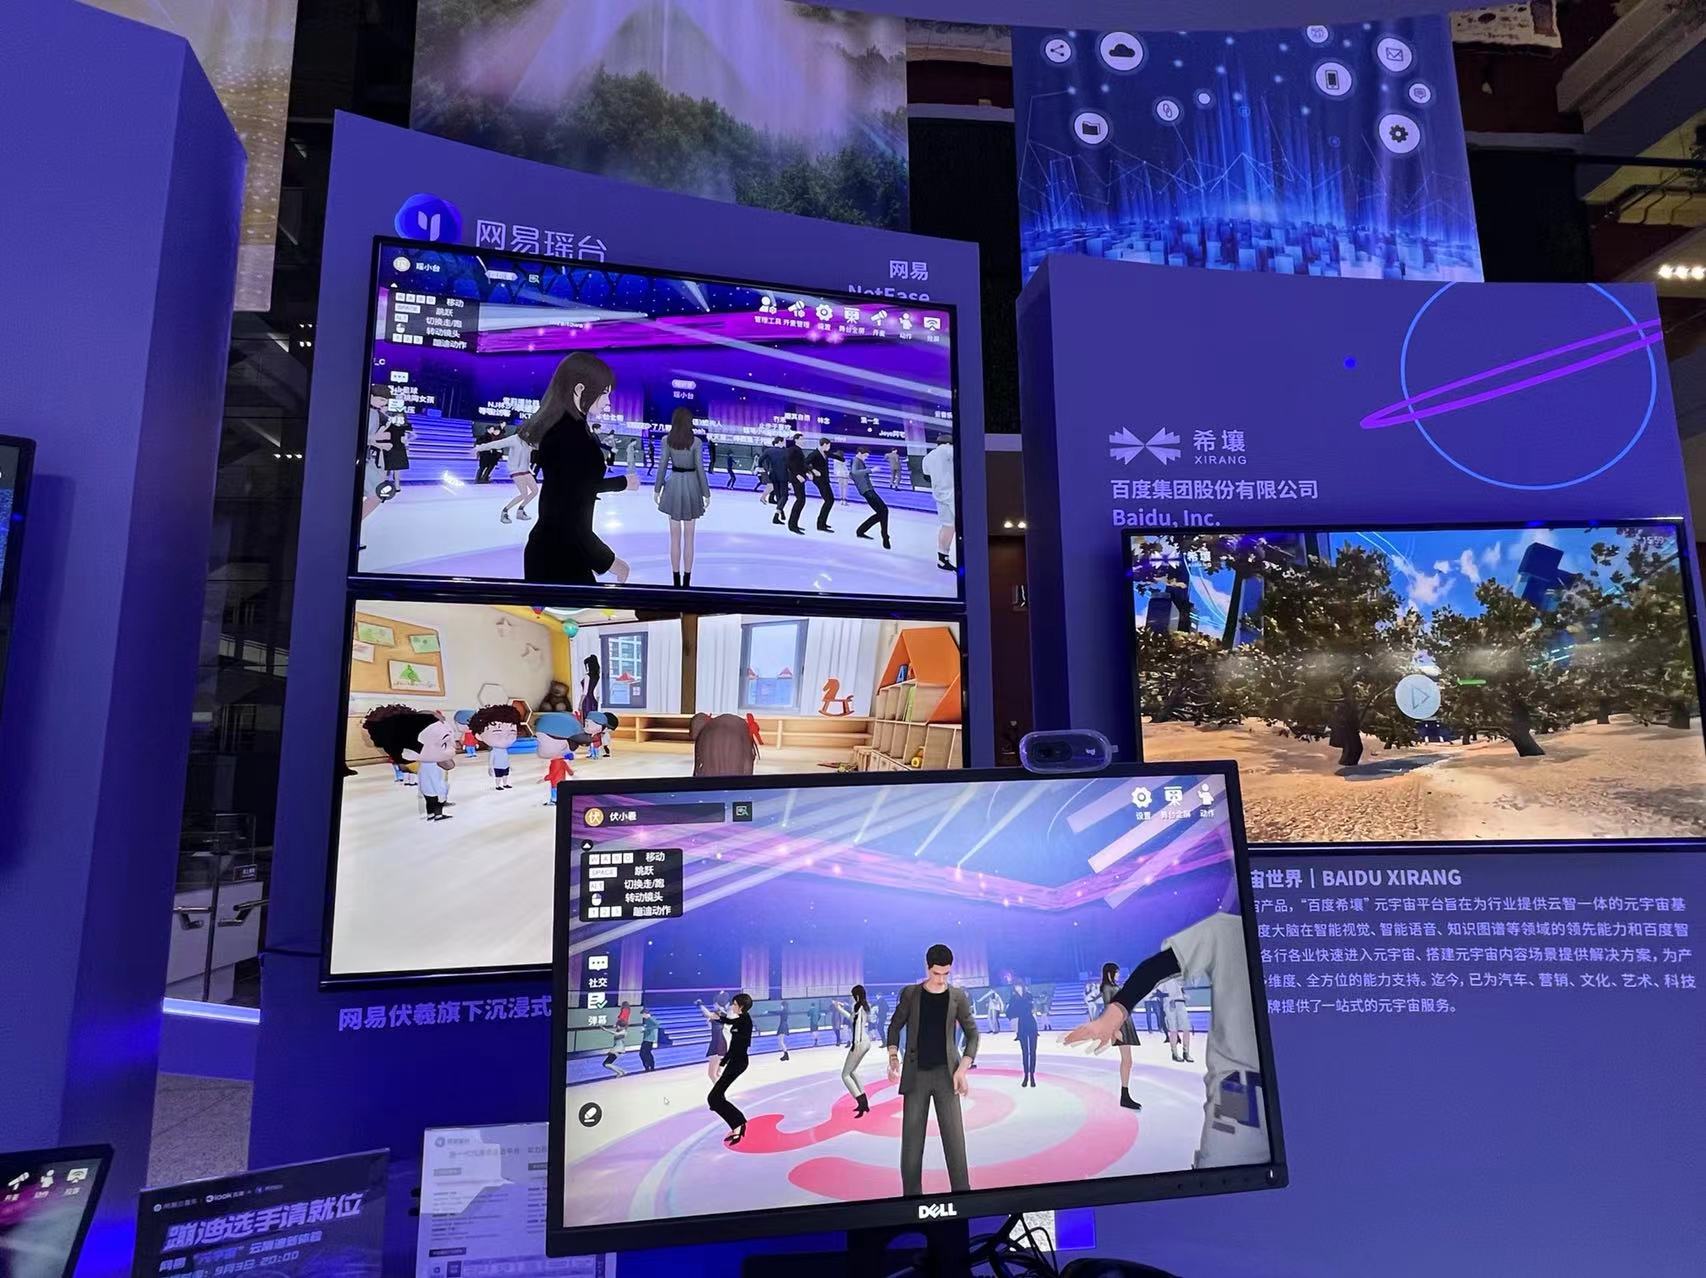 图片展示了多个显示器，显示着不同的虚拟现实场景和动画人物，可能是某种技术或产品展示。